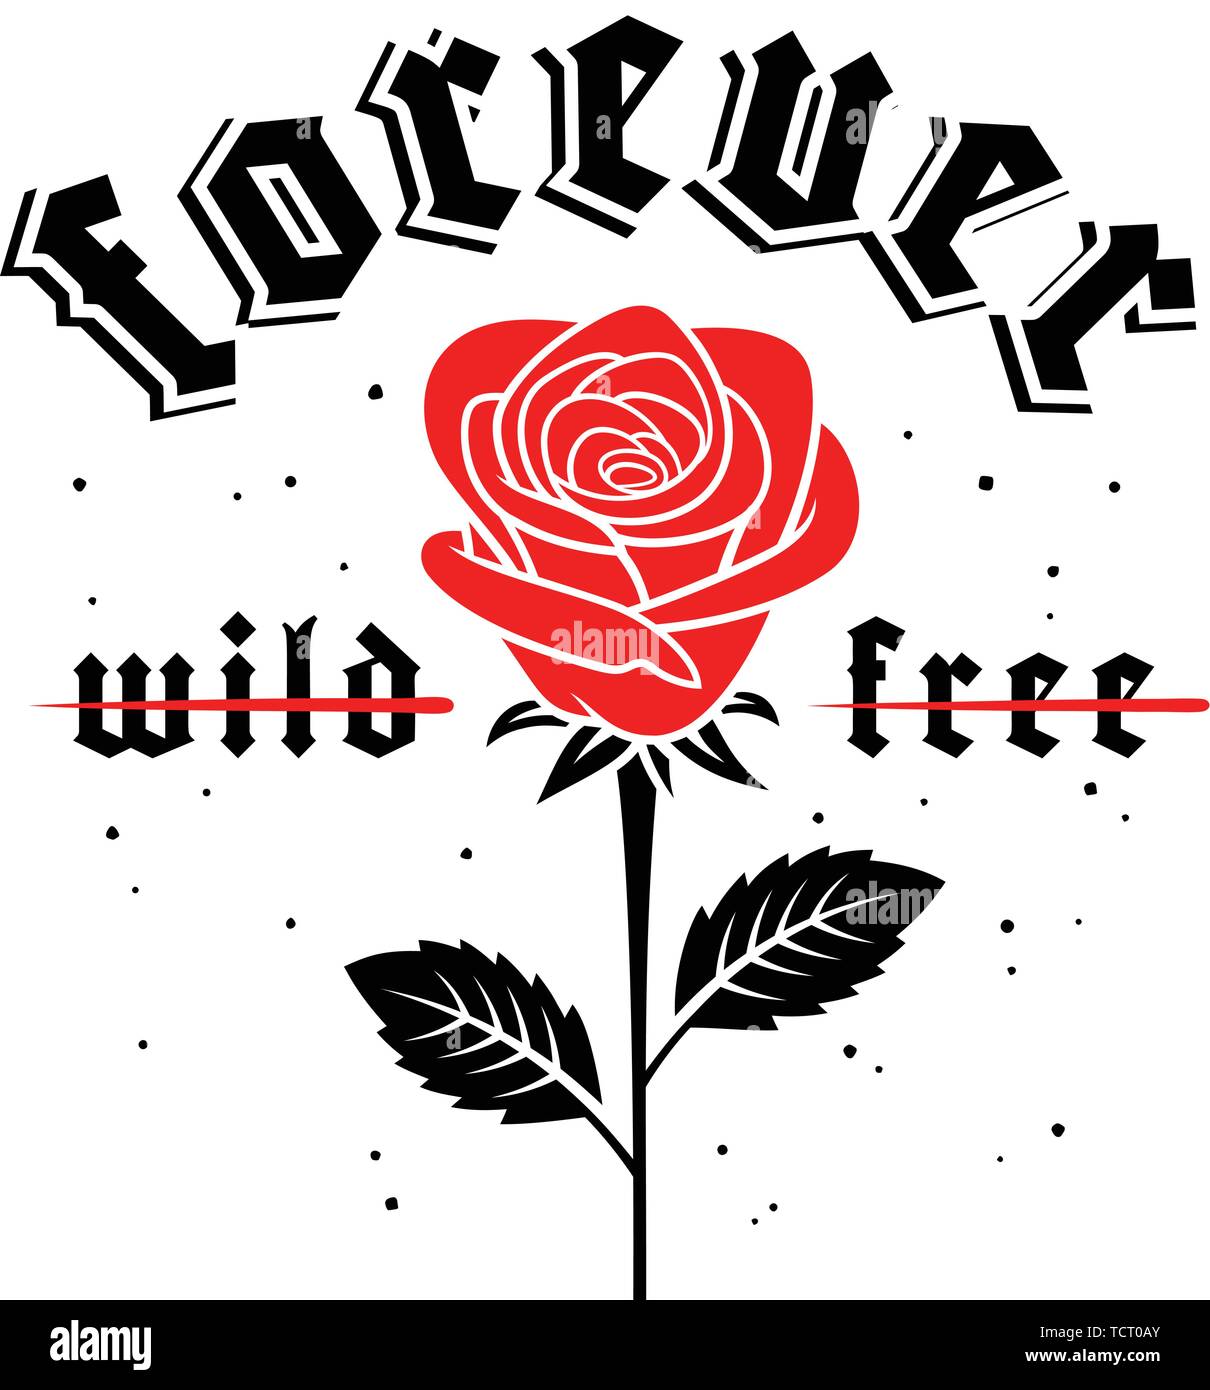 Slogan graphique illustration à la rose en style gothique pour t-shirts imprimés design. Vecteurs Illustration de Vecteur